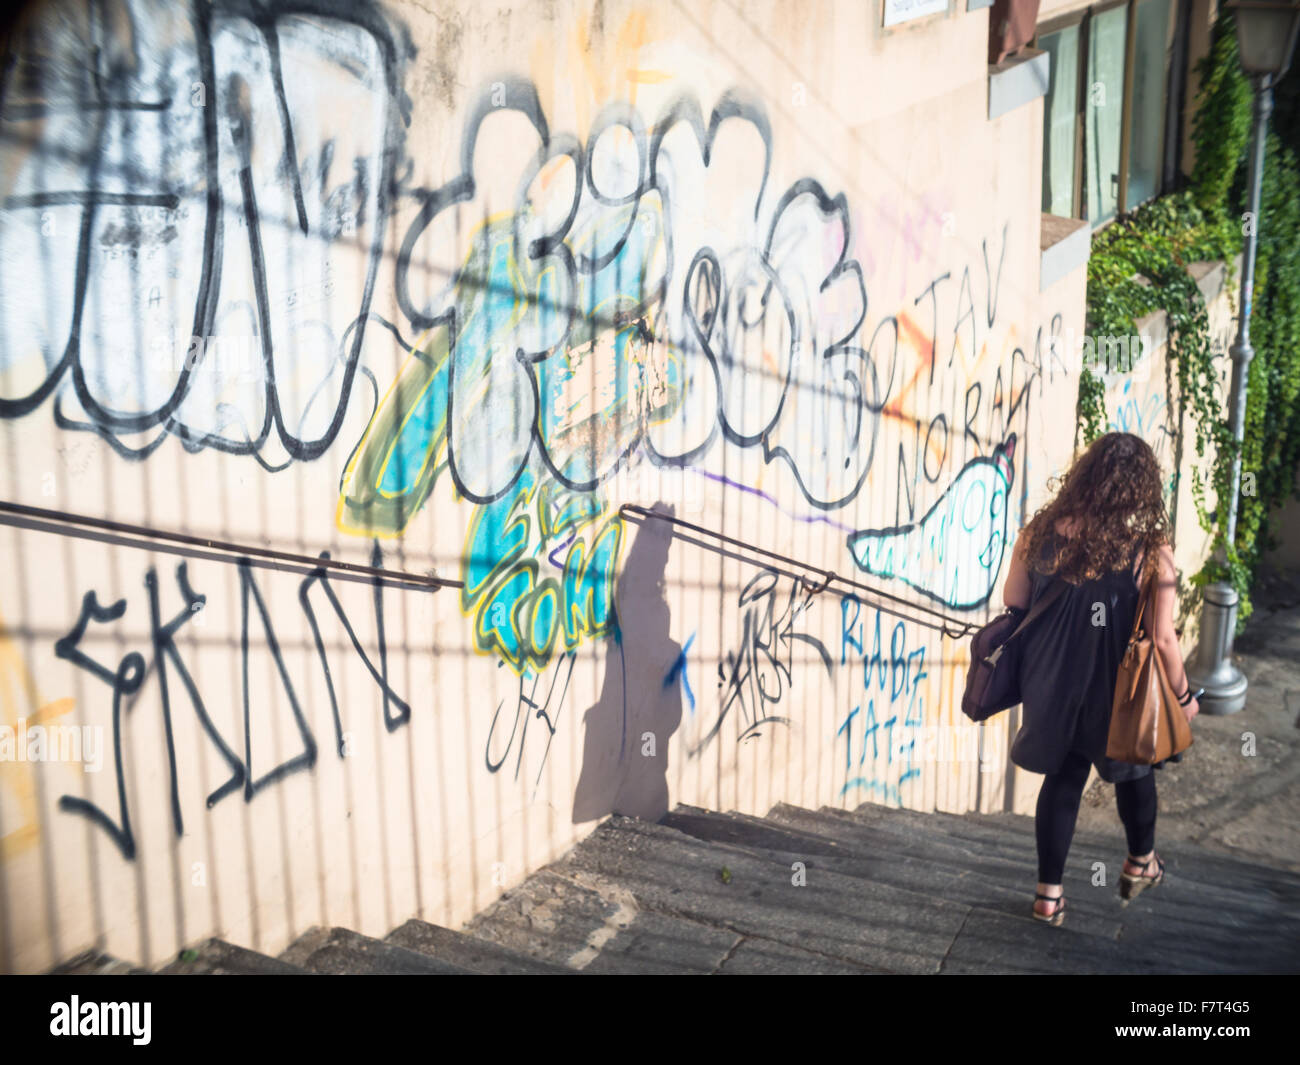 Descente d'escalier au coucher du soleil. Girl retour à l'accueil dans un vol d'étapes avec divers graffiti sur le mur Banque D'Images